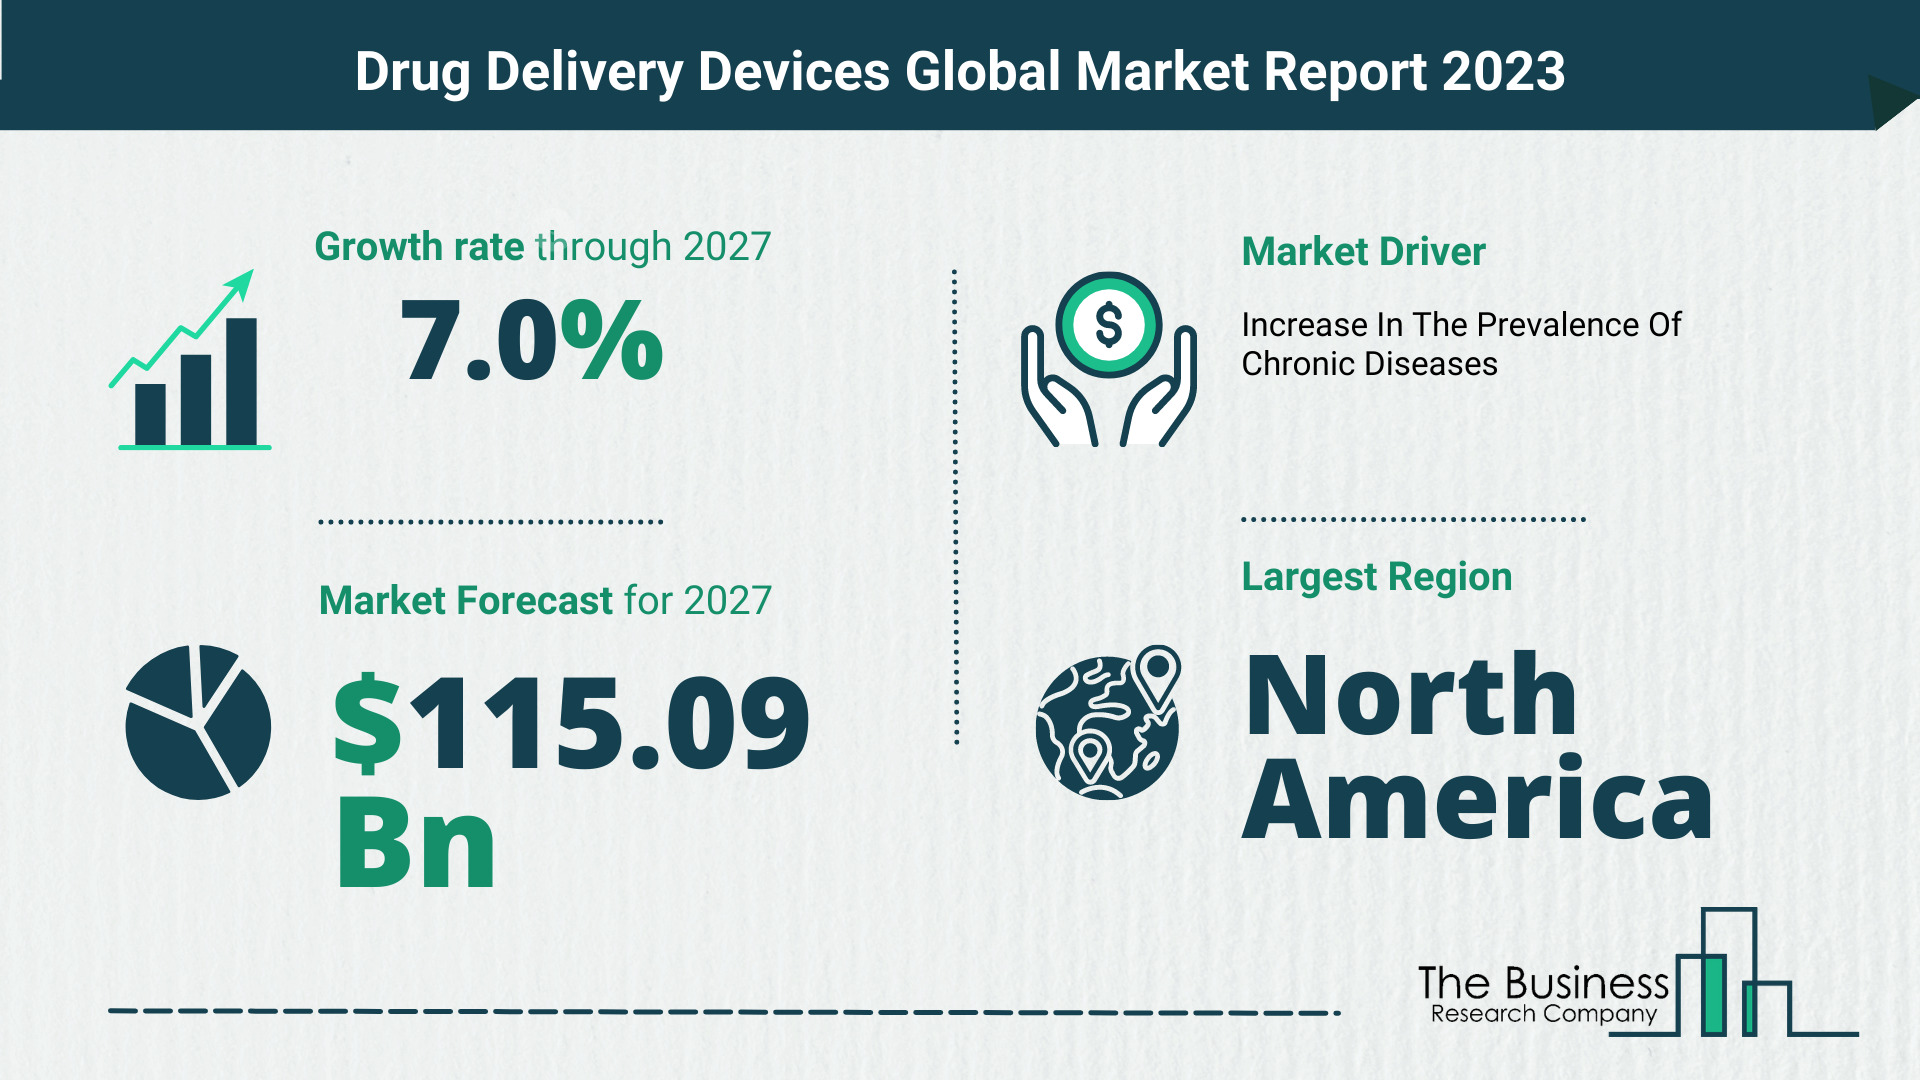 Global Drug Delivery Devices Market